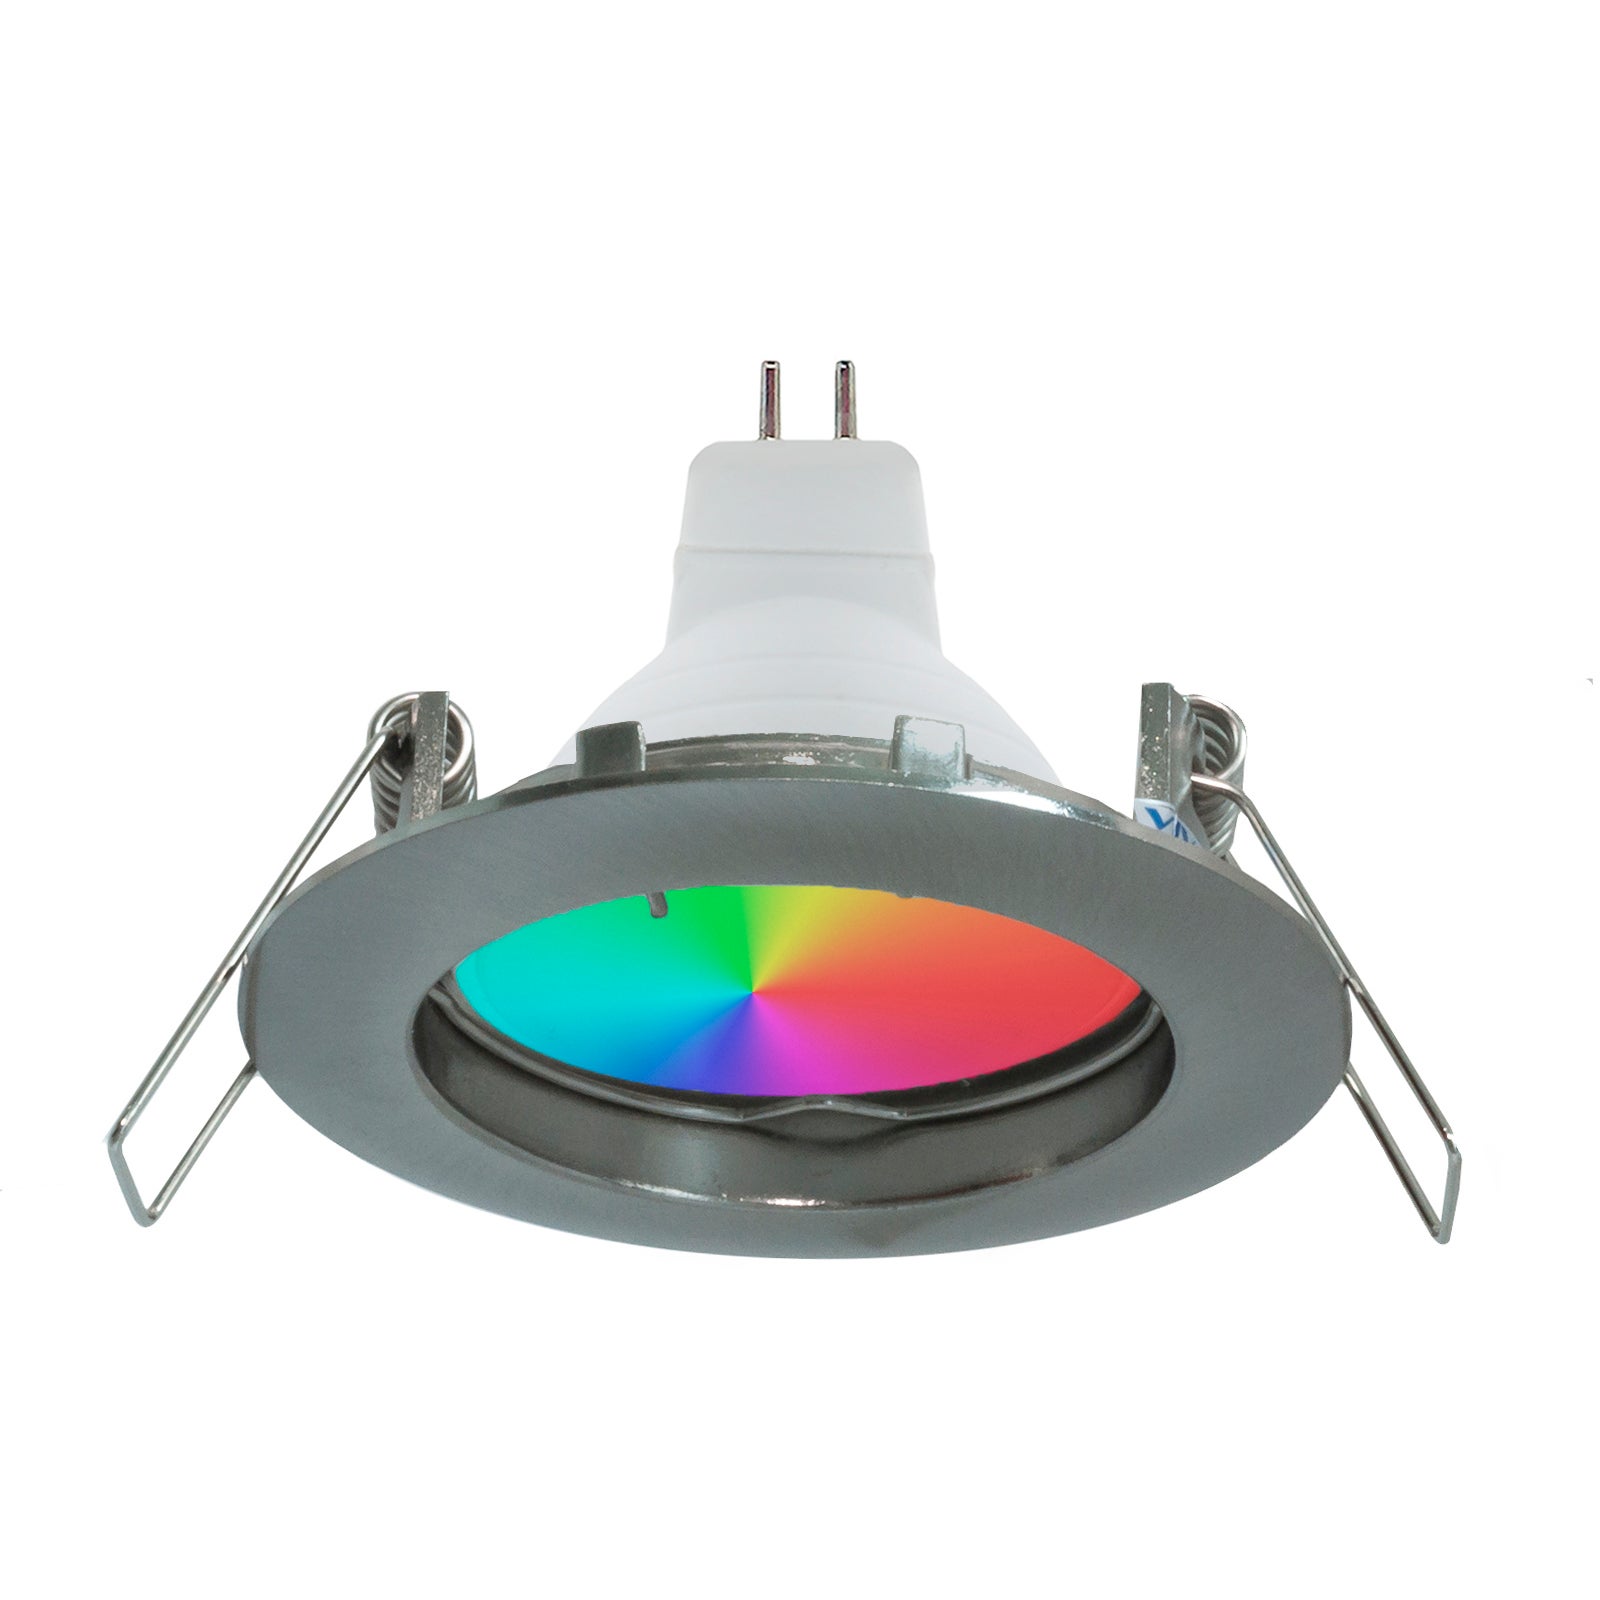 Spot LED RGB 6W multicolore 12V encastré 6cm rond RGBW effets